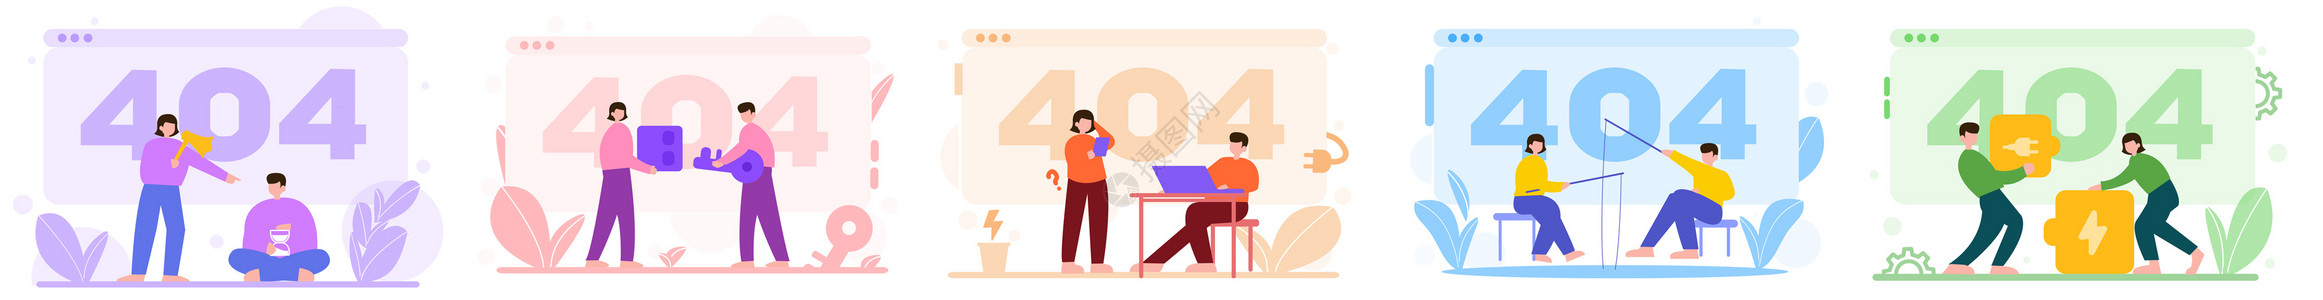 404页面彩色404等待电源催促人物场景插图插画